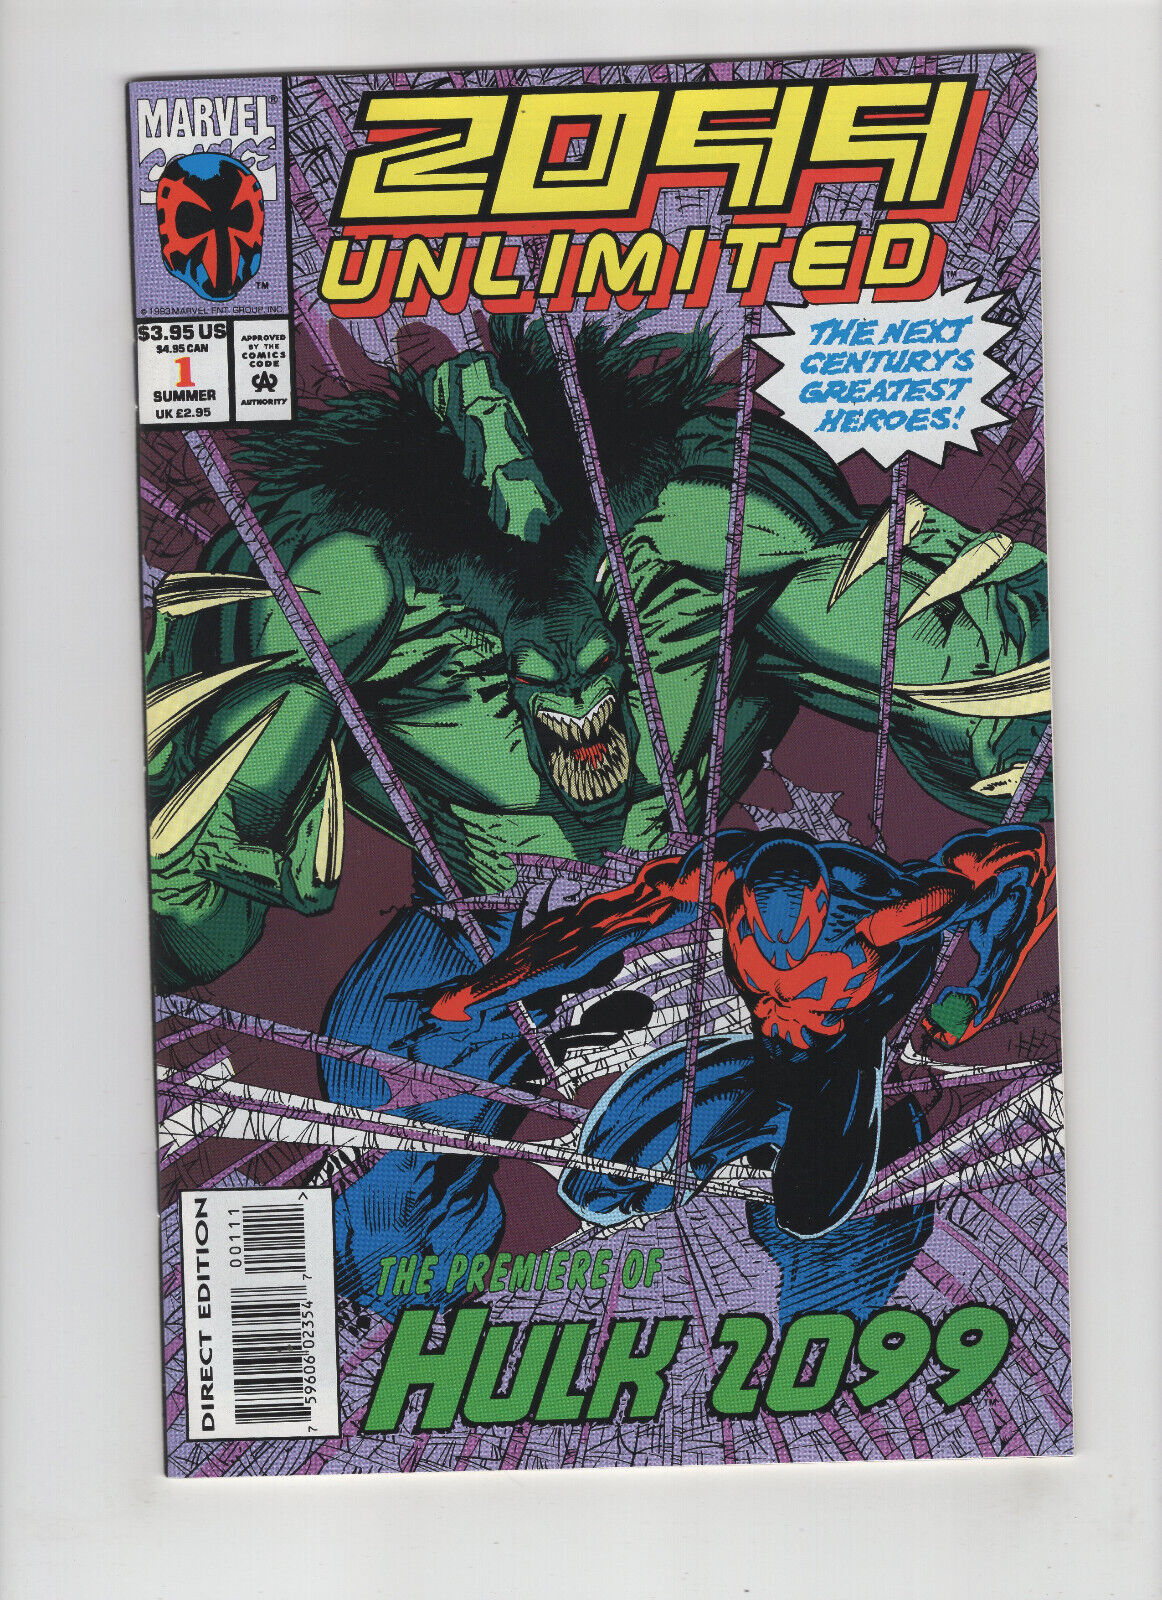 2099 Unlimited #1 (Marvel Comics, 1993)